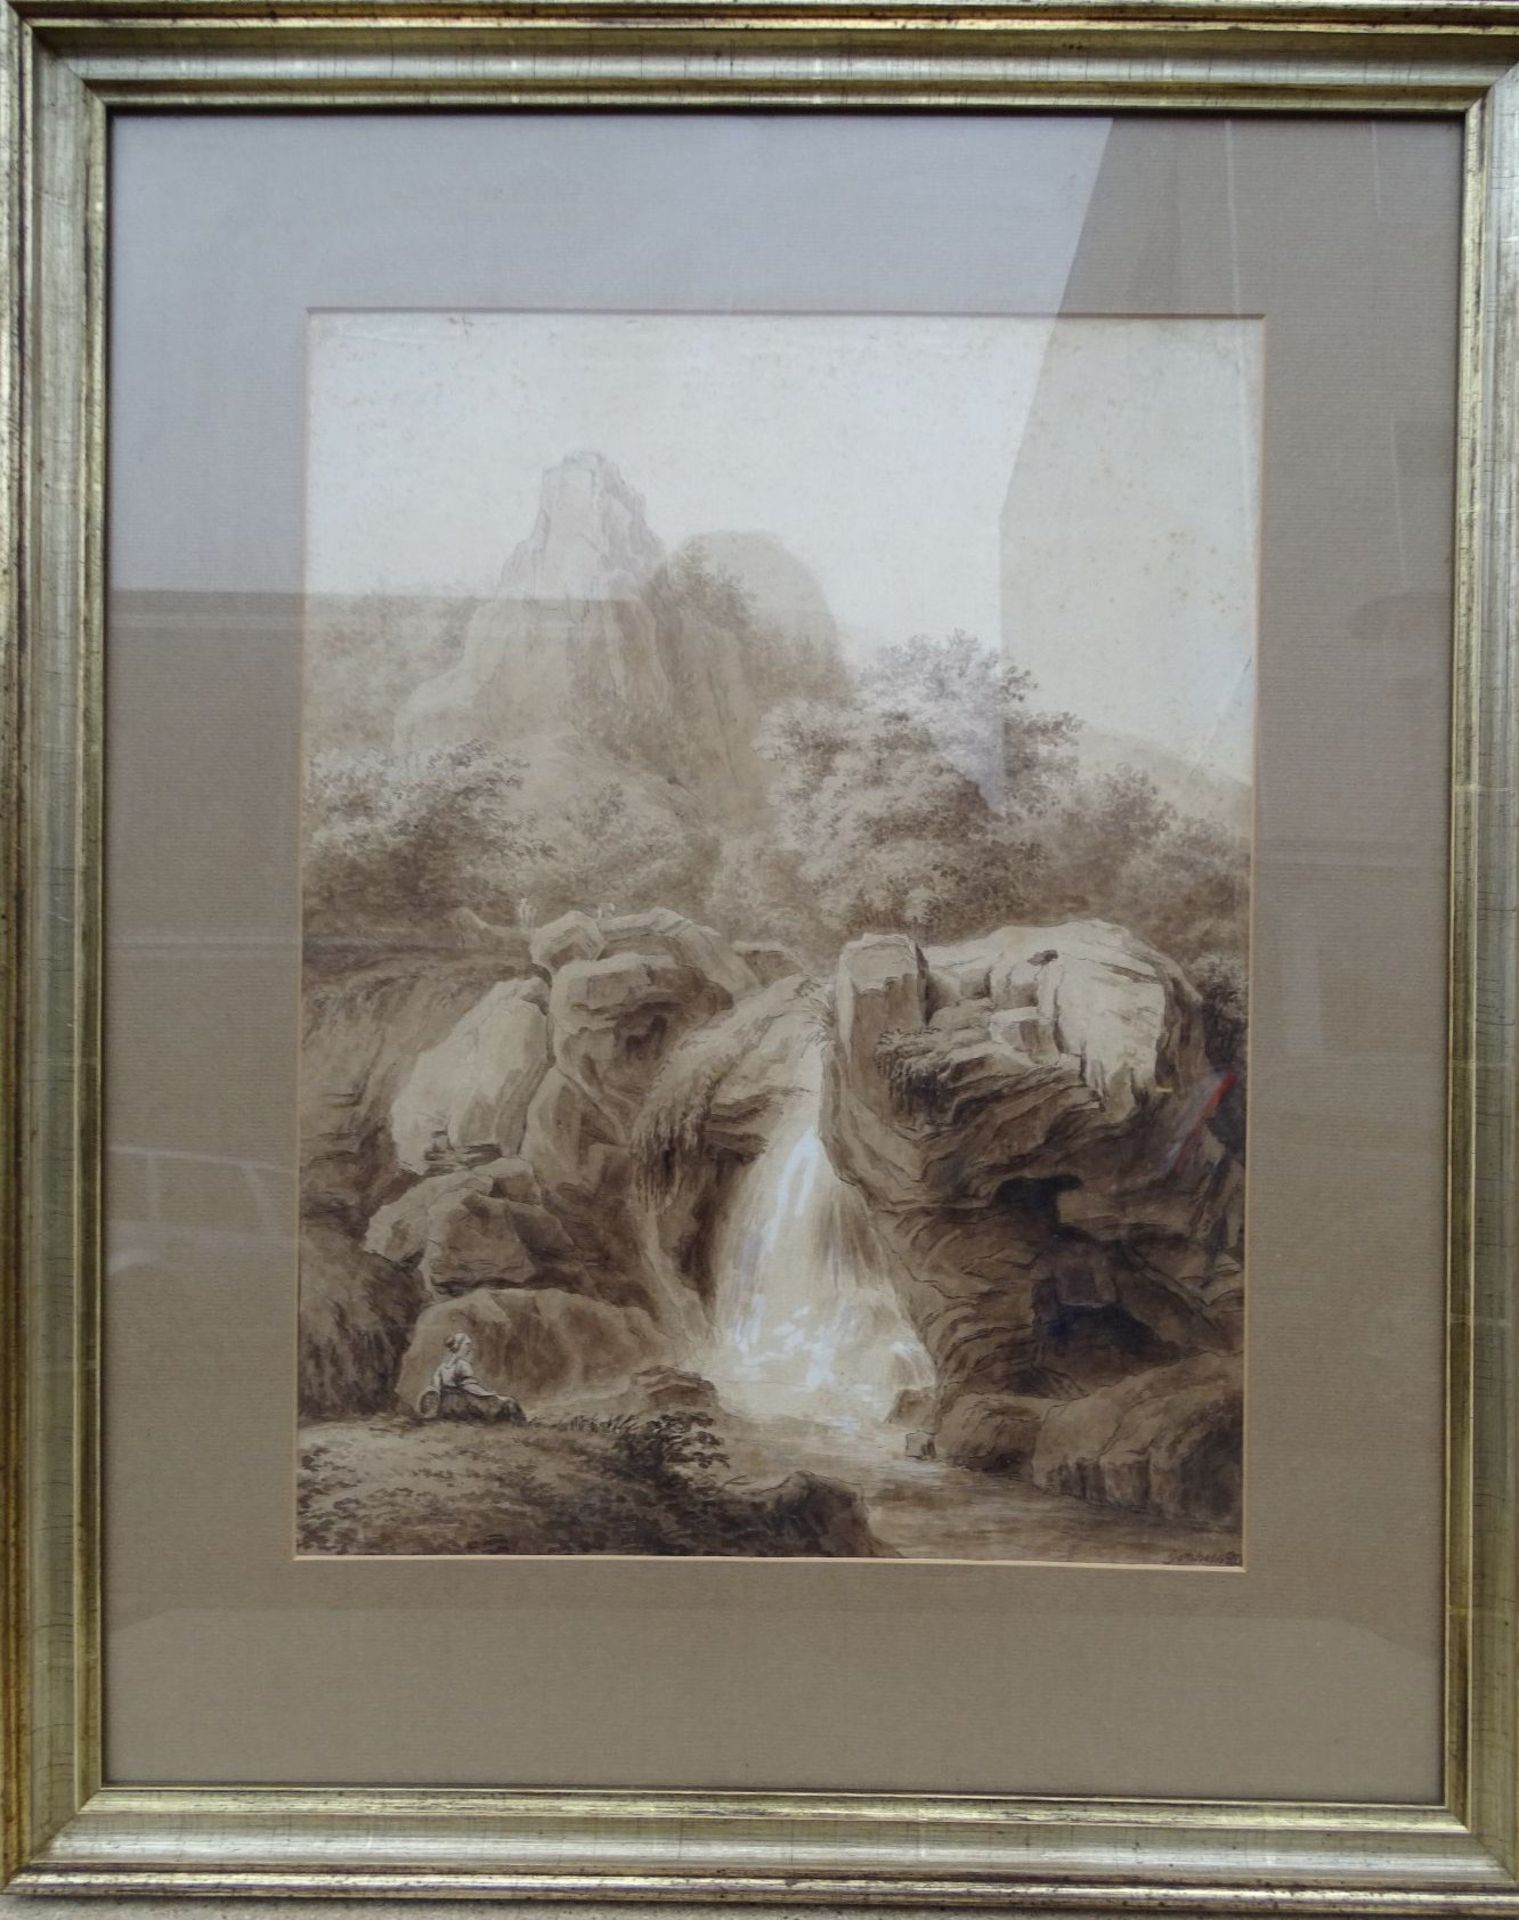 Albert GOTTSCHALK (1866-1906) "Wasserfall" Aquarell, schwer lesbar datiert, (1893?), ger/Glas, RG 6